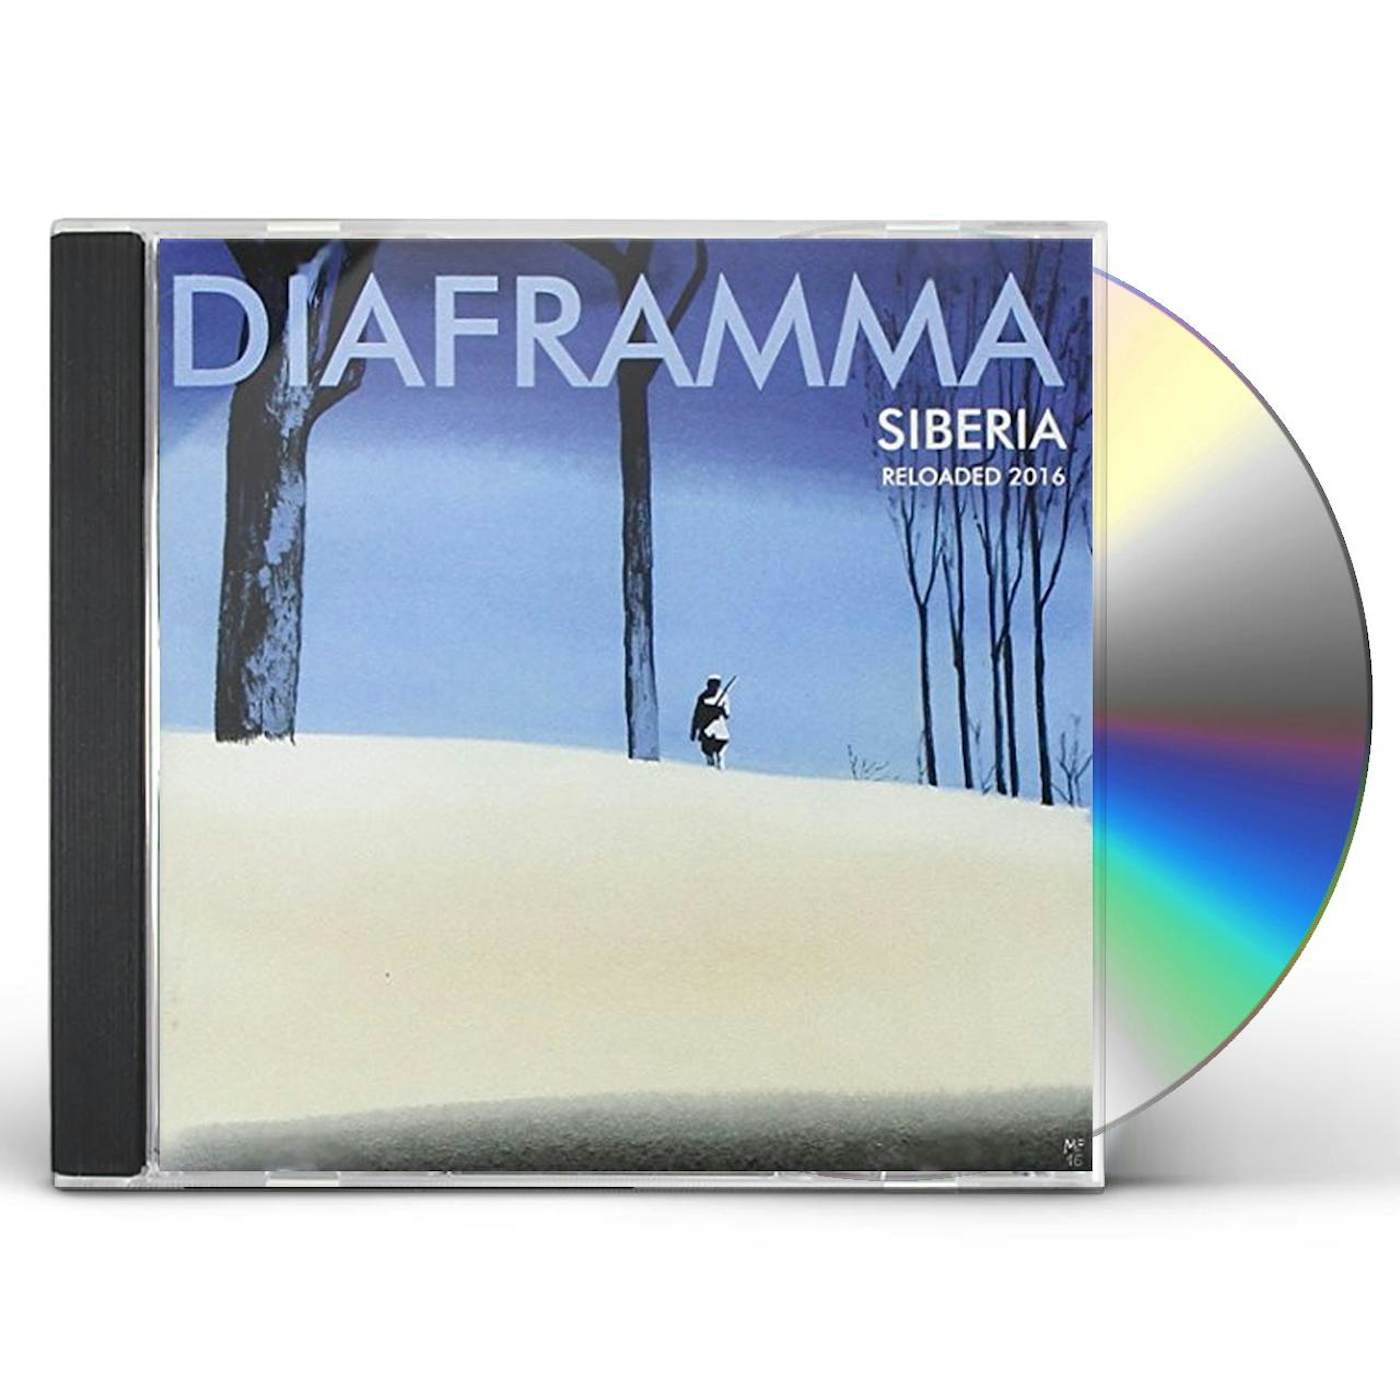 Diaframma SIBERIA RELOADED 2016 CD